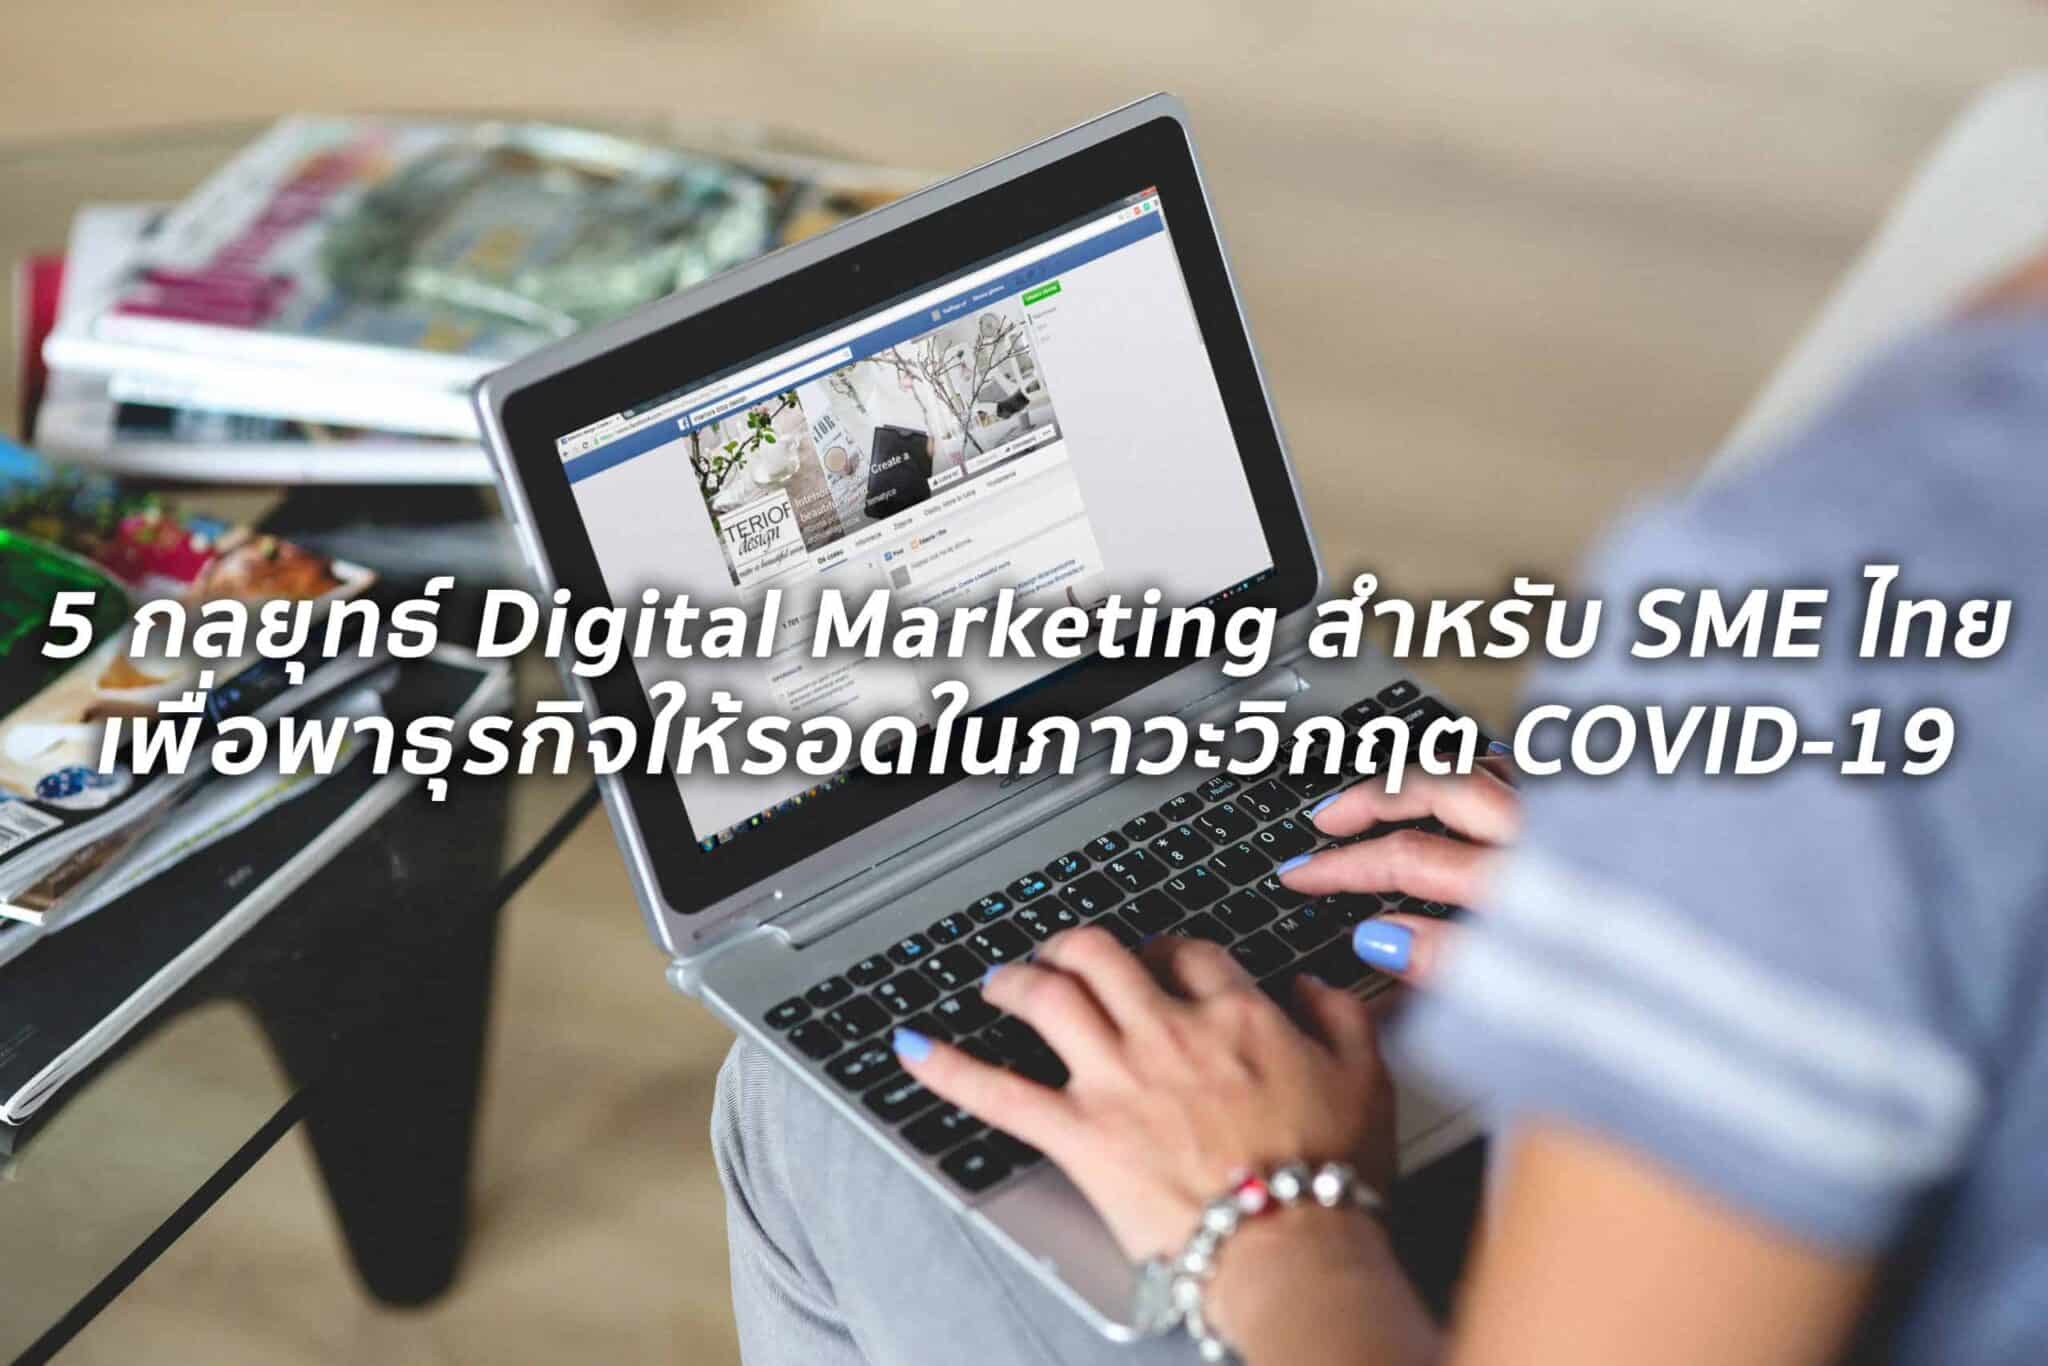 5 แนวทาง Digital Marketing สำหรับ SME เพื่อเอาตัวรอดในช่วงวิกฤติ COVID19